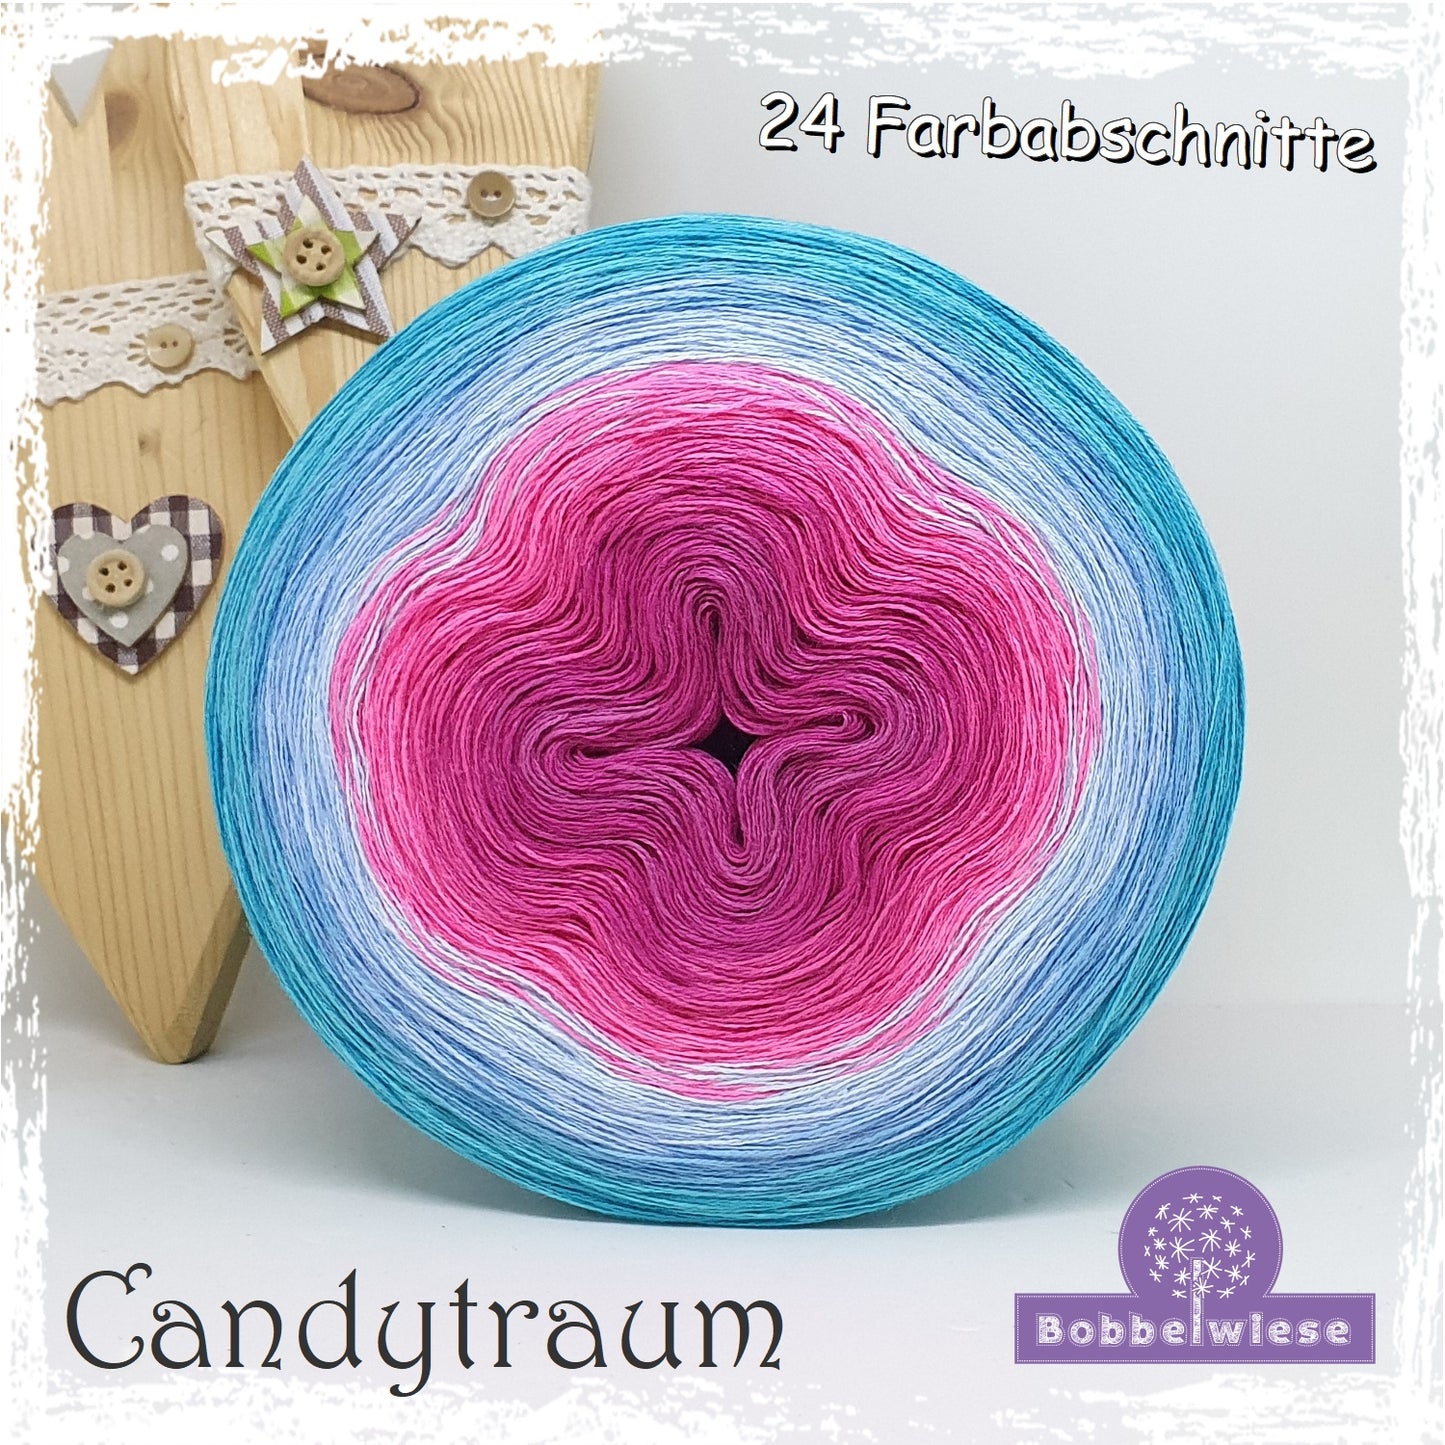 Bobbel "Candytraum", 24 Farbabschnitte, 4fädig